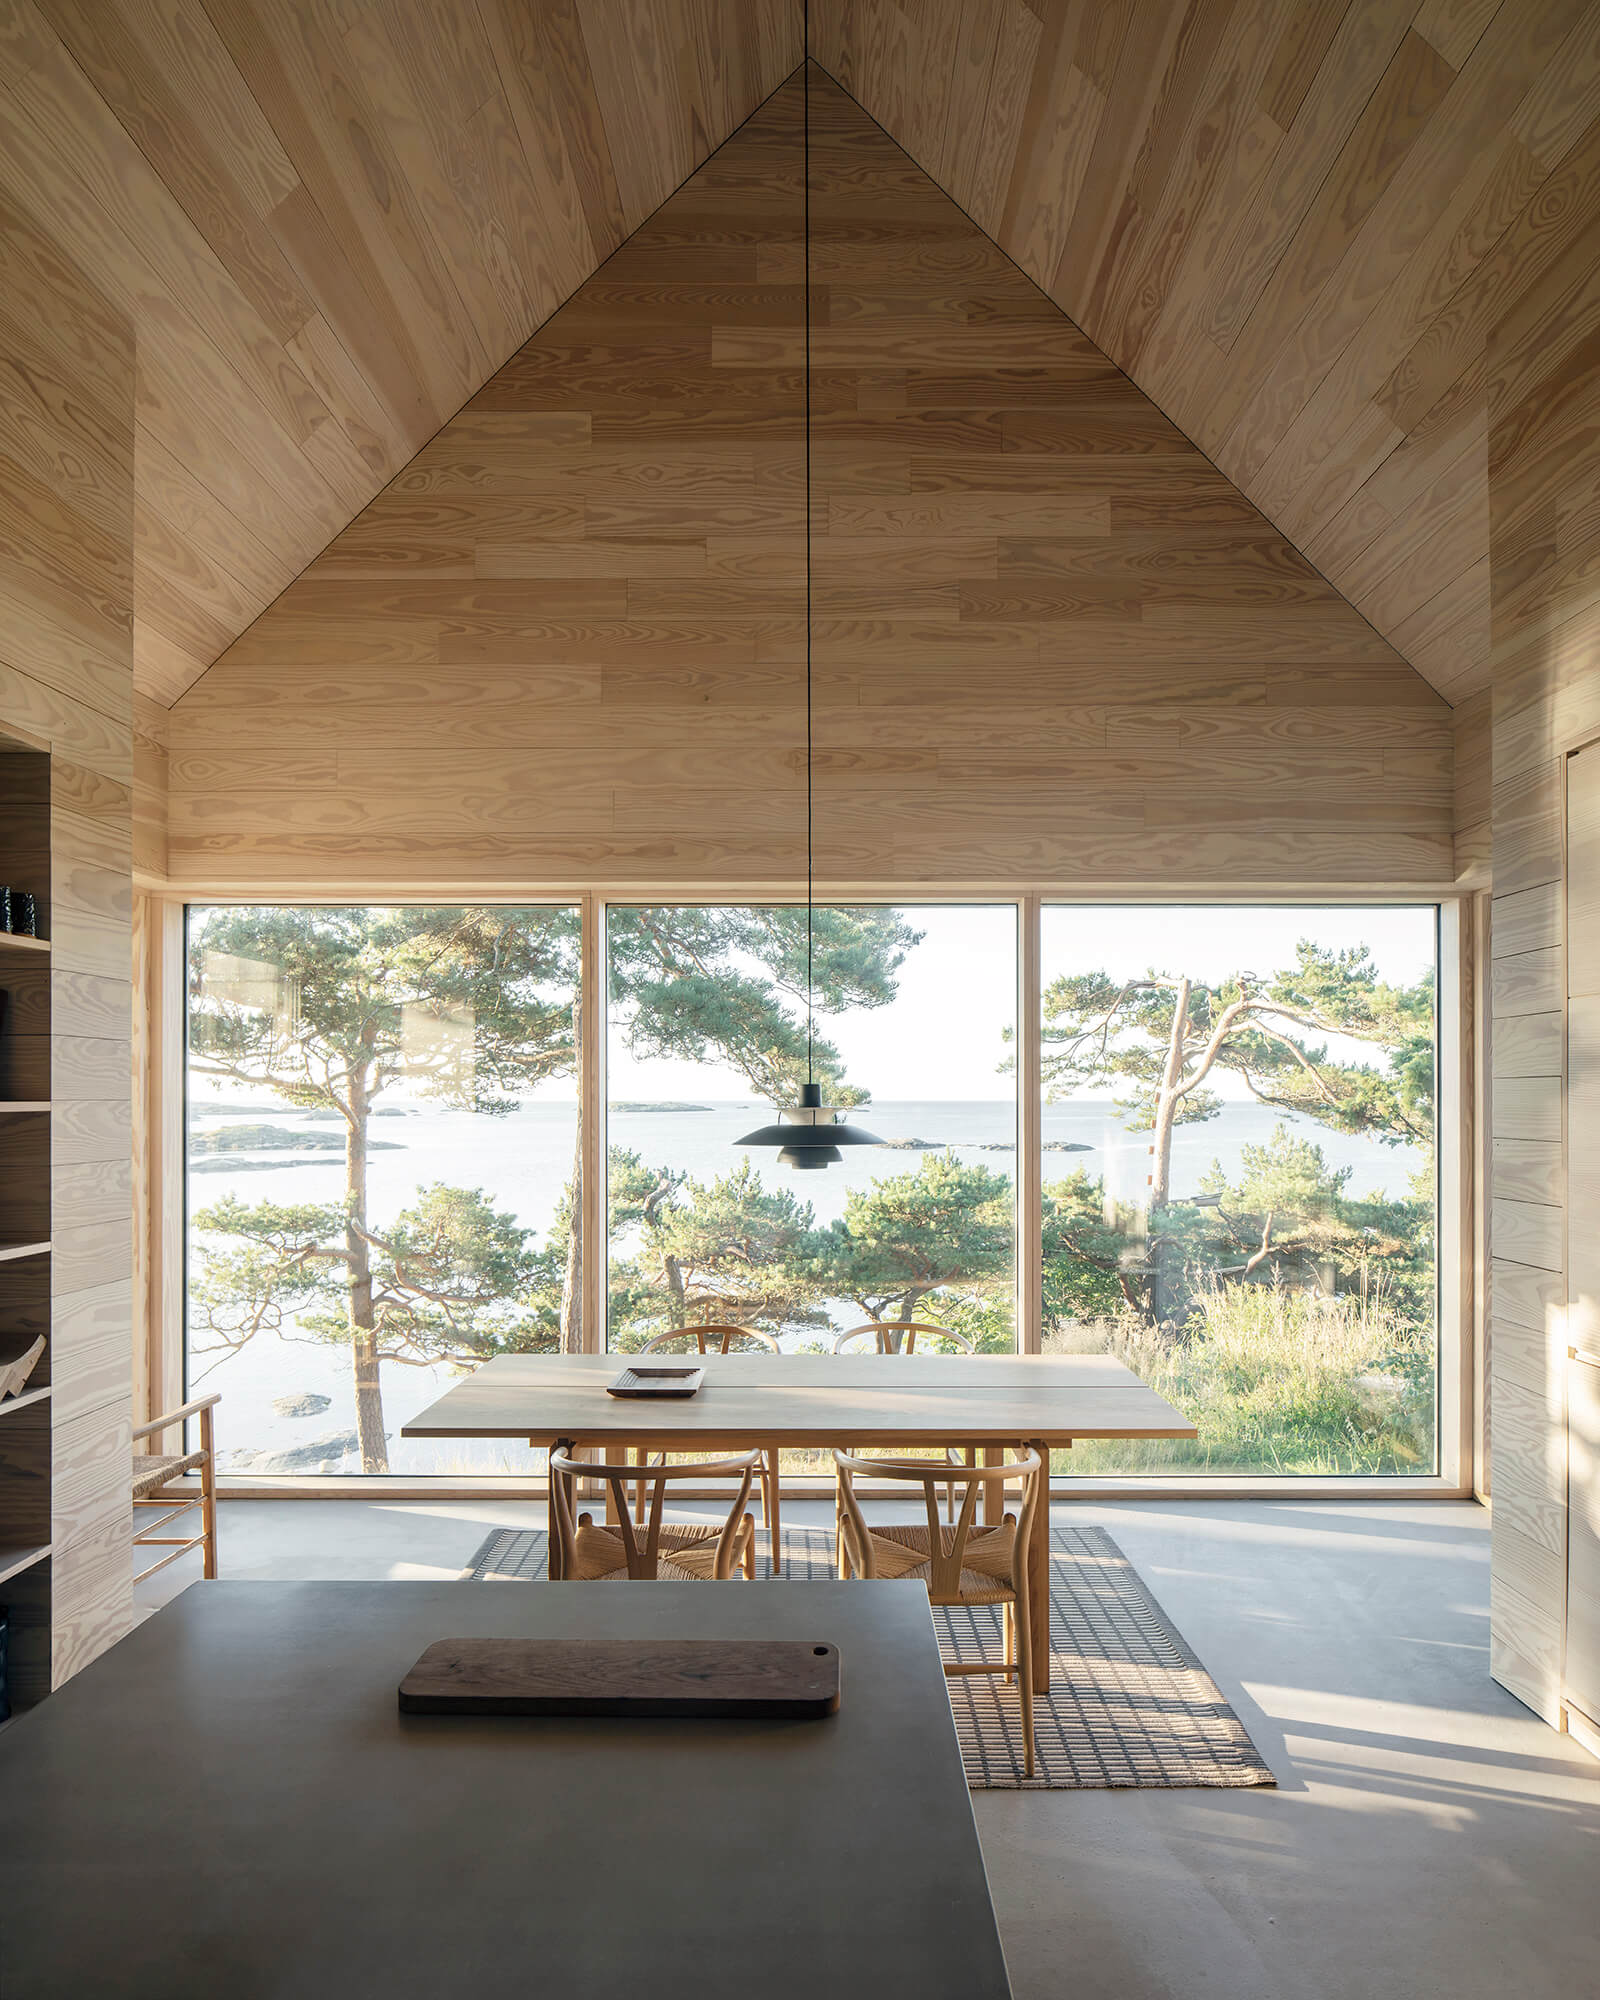 Le plafond haut crée des volumes expansifs à l'intérieur | Saltviga House | Kolman Boye Architects | STIRworld